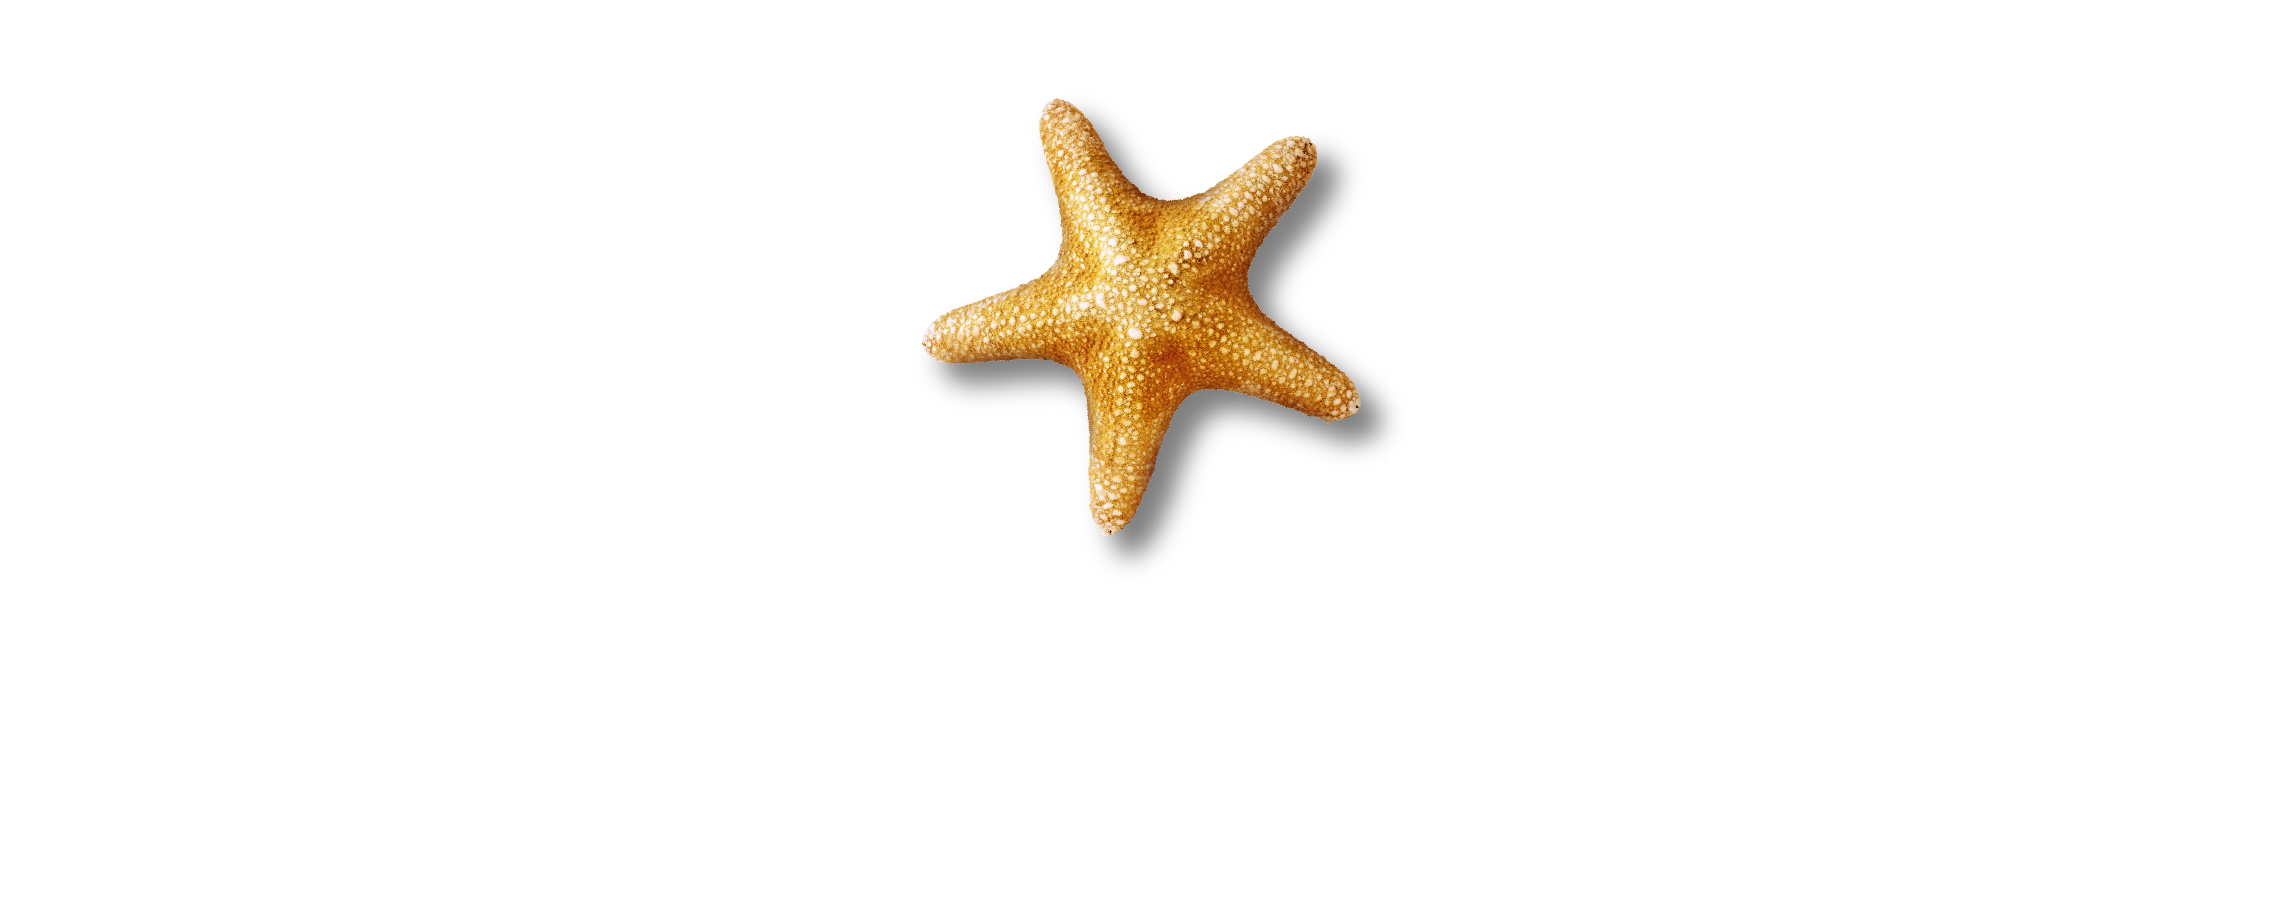 SEA LIFE + Sydney (White Text) RGB